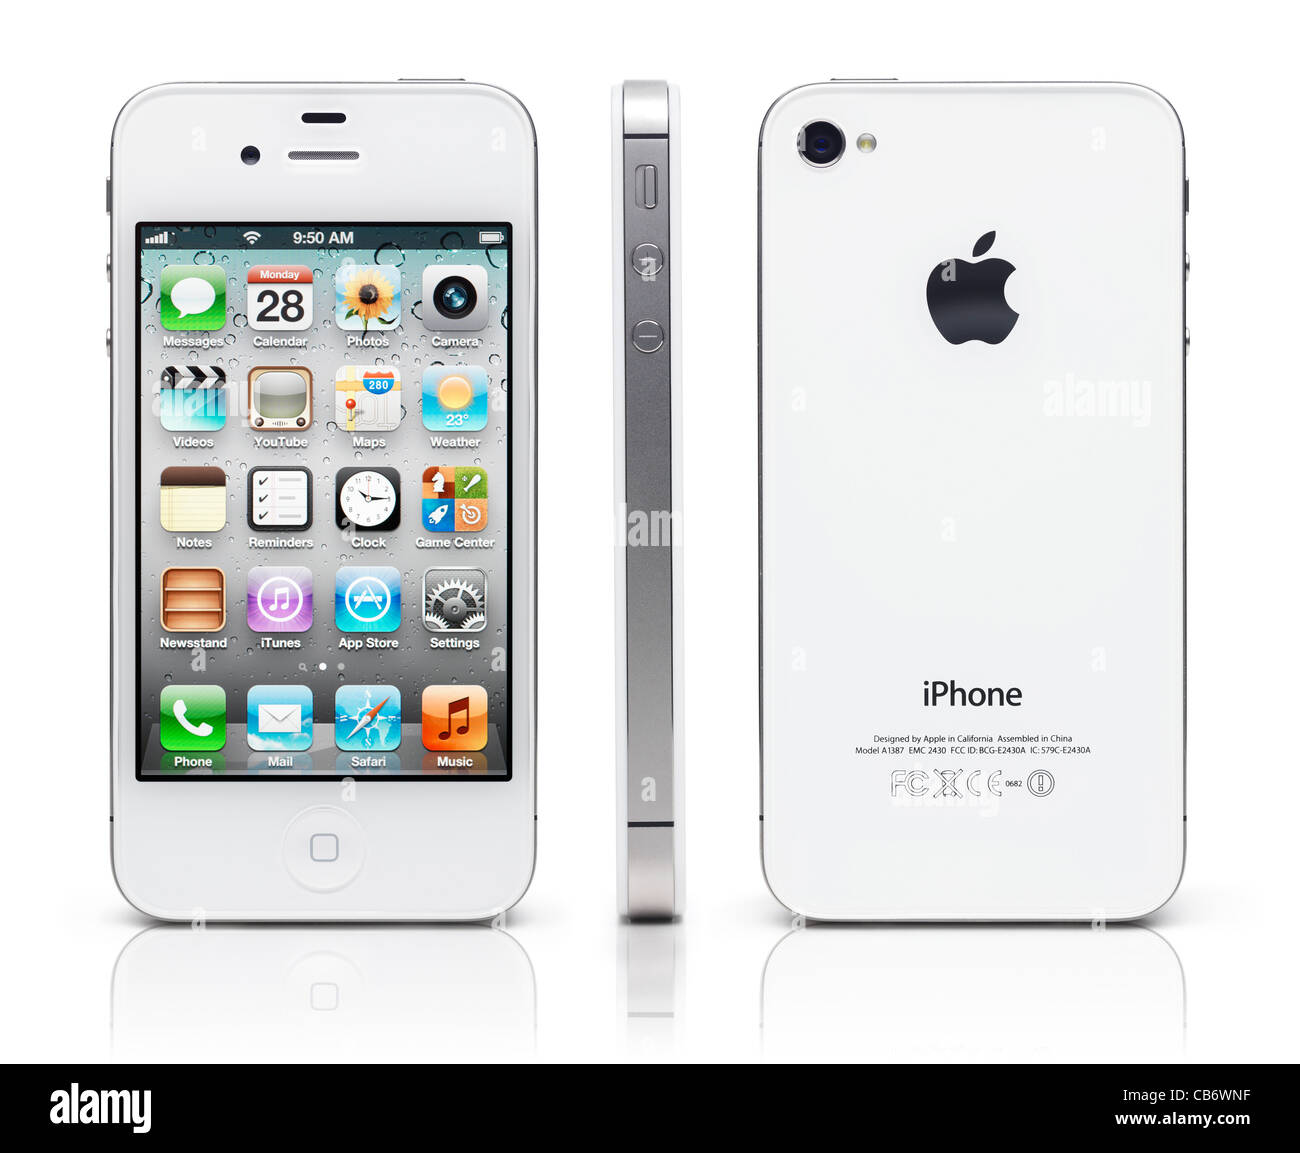 Weiße Apple-Smartphone iPhone 4 s von drei Seiten, Vorderseite, Rückseite und Seitenansicht gezeigt. Isoliert auf weißem Hintergrund Stockfoto